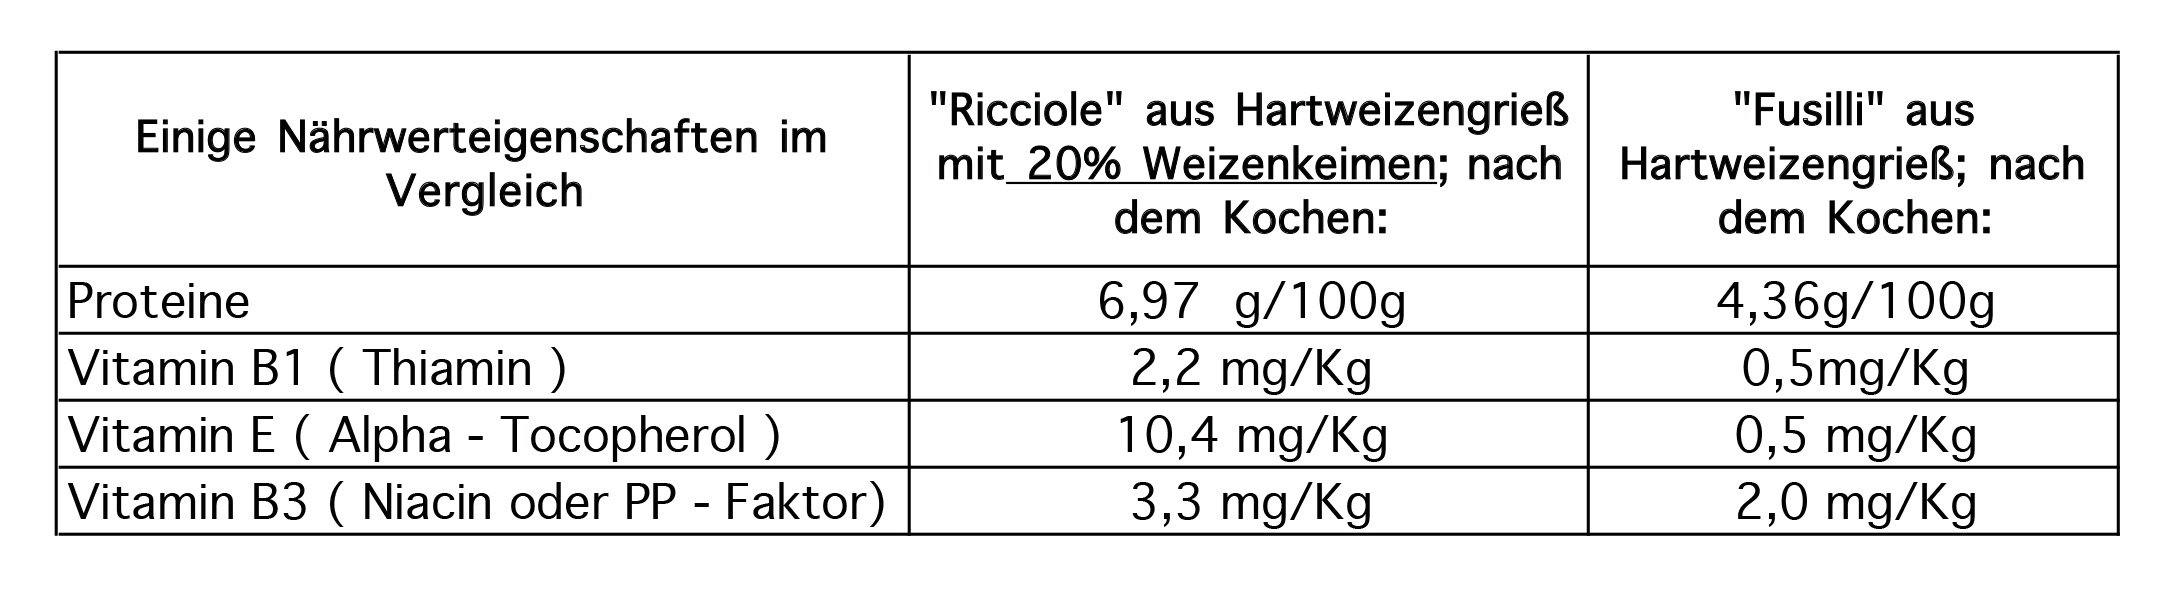 Protein- und Vitamingehalt von zwei Sorten Weizenkeimnudeln im Vergleich